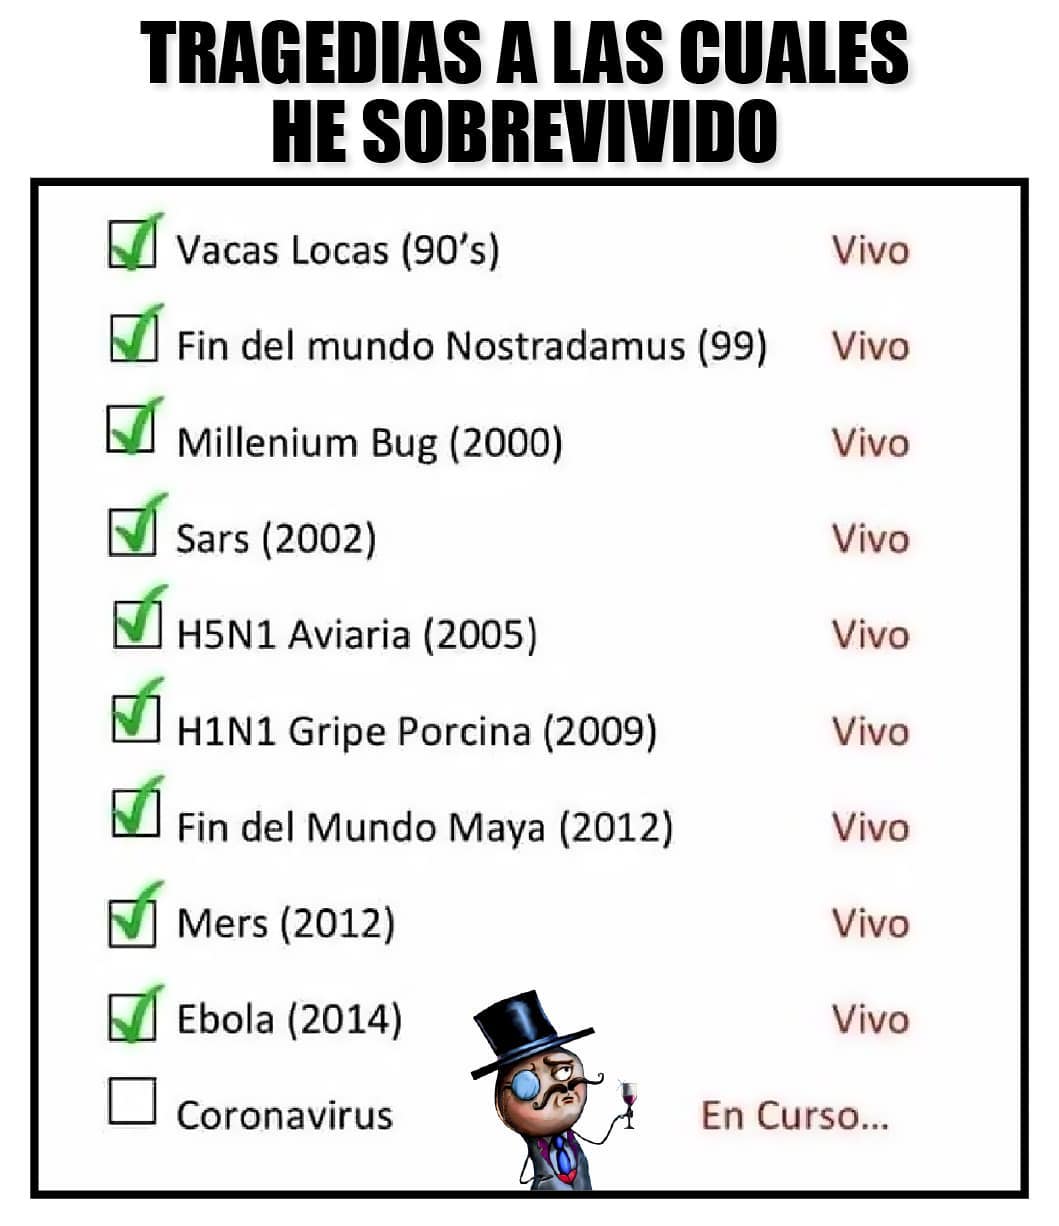 Tragedias a las cuales he sobrevivido:  Vacas Locas (90's)  Fin del mundo Nostradamus (99)  Millenium Bug (2000)  Sars (2002)  H5N1 Aviaria (2005)  H1N1 Gripe Porcina (2009)  Fin del Mundo Maya (2012)  Mers (2012)  Ebola (2014)  Coronavirus (En curso...)